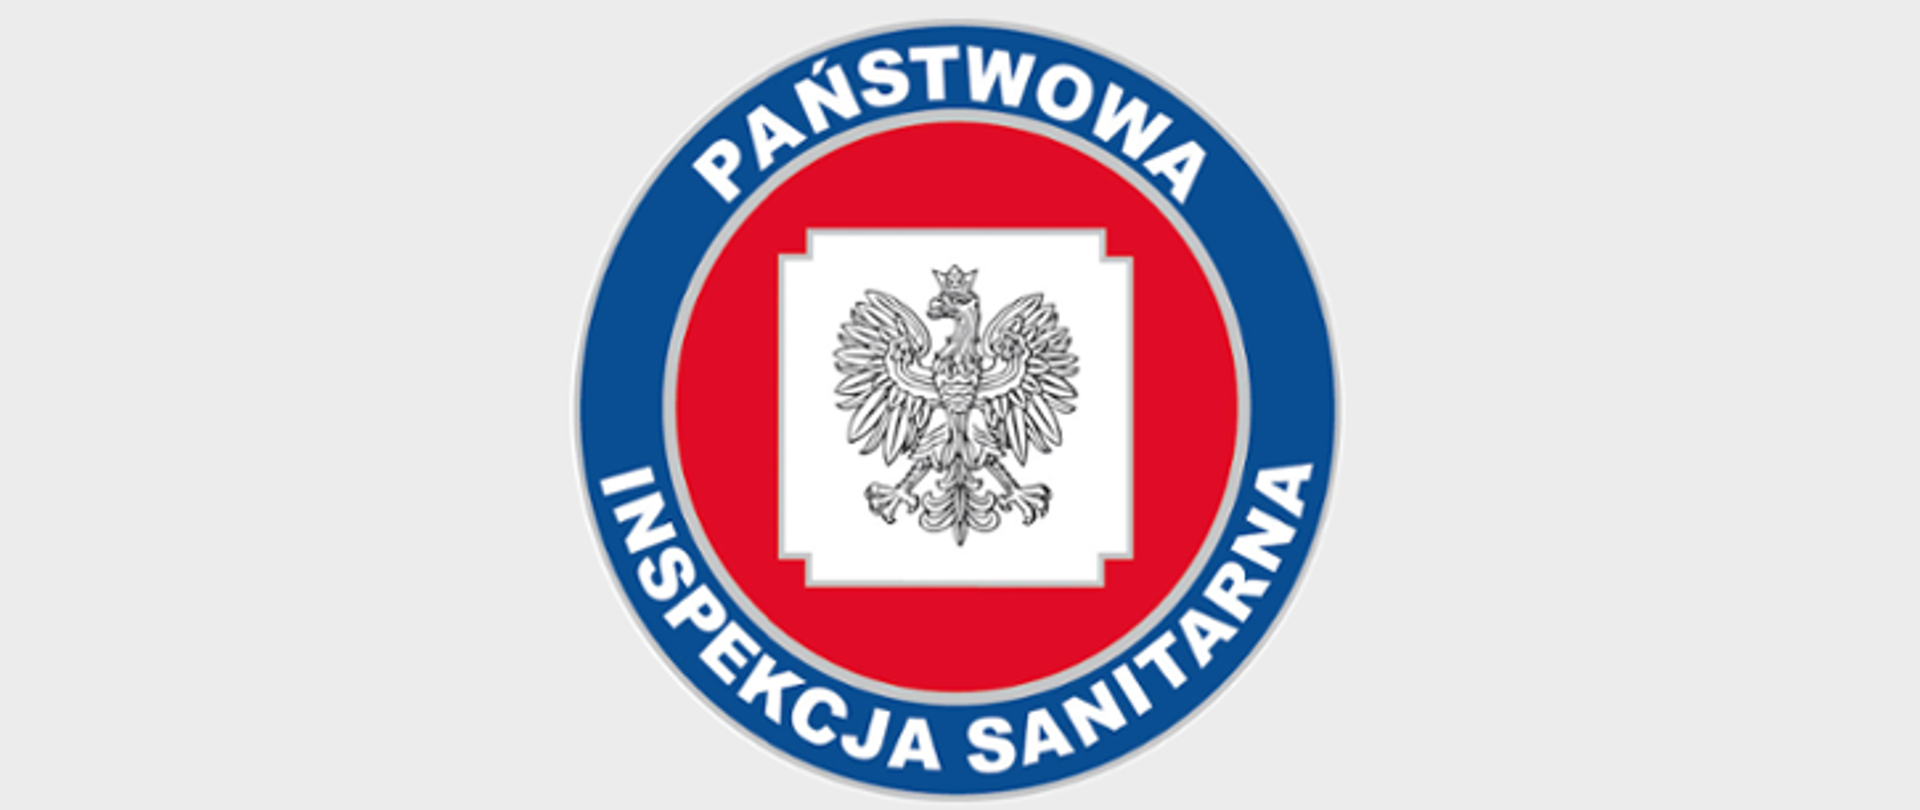 Logo Państwowej Inspekcji Sanitarnej: orzeł na białym tle, które jest w kształcie kwadratu wpisanego w czerwone koło, dookoła którego znajduje się niebieska obwódka z napisem Państwowa Inspekcja Sanitarna.